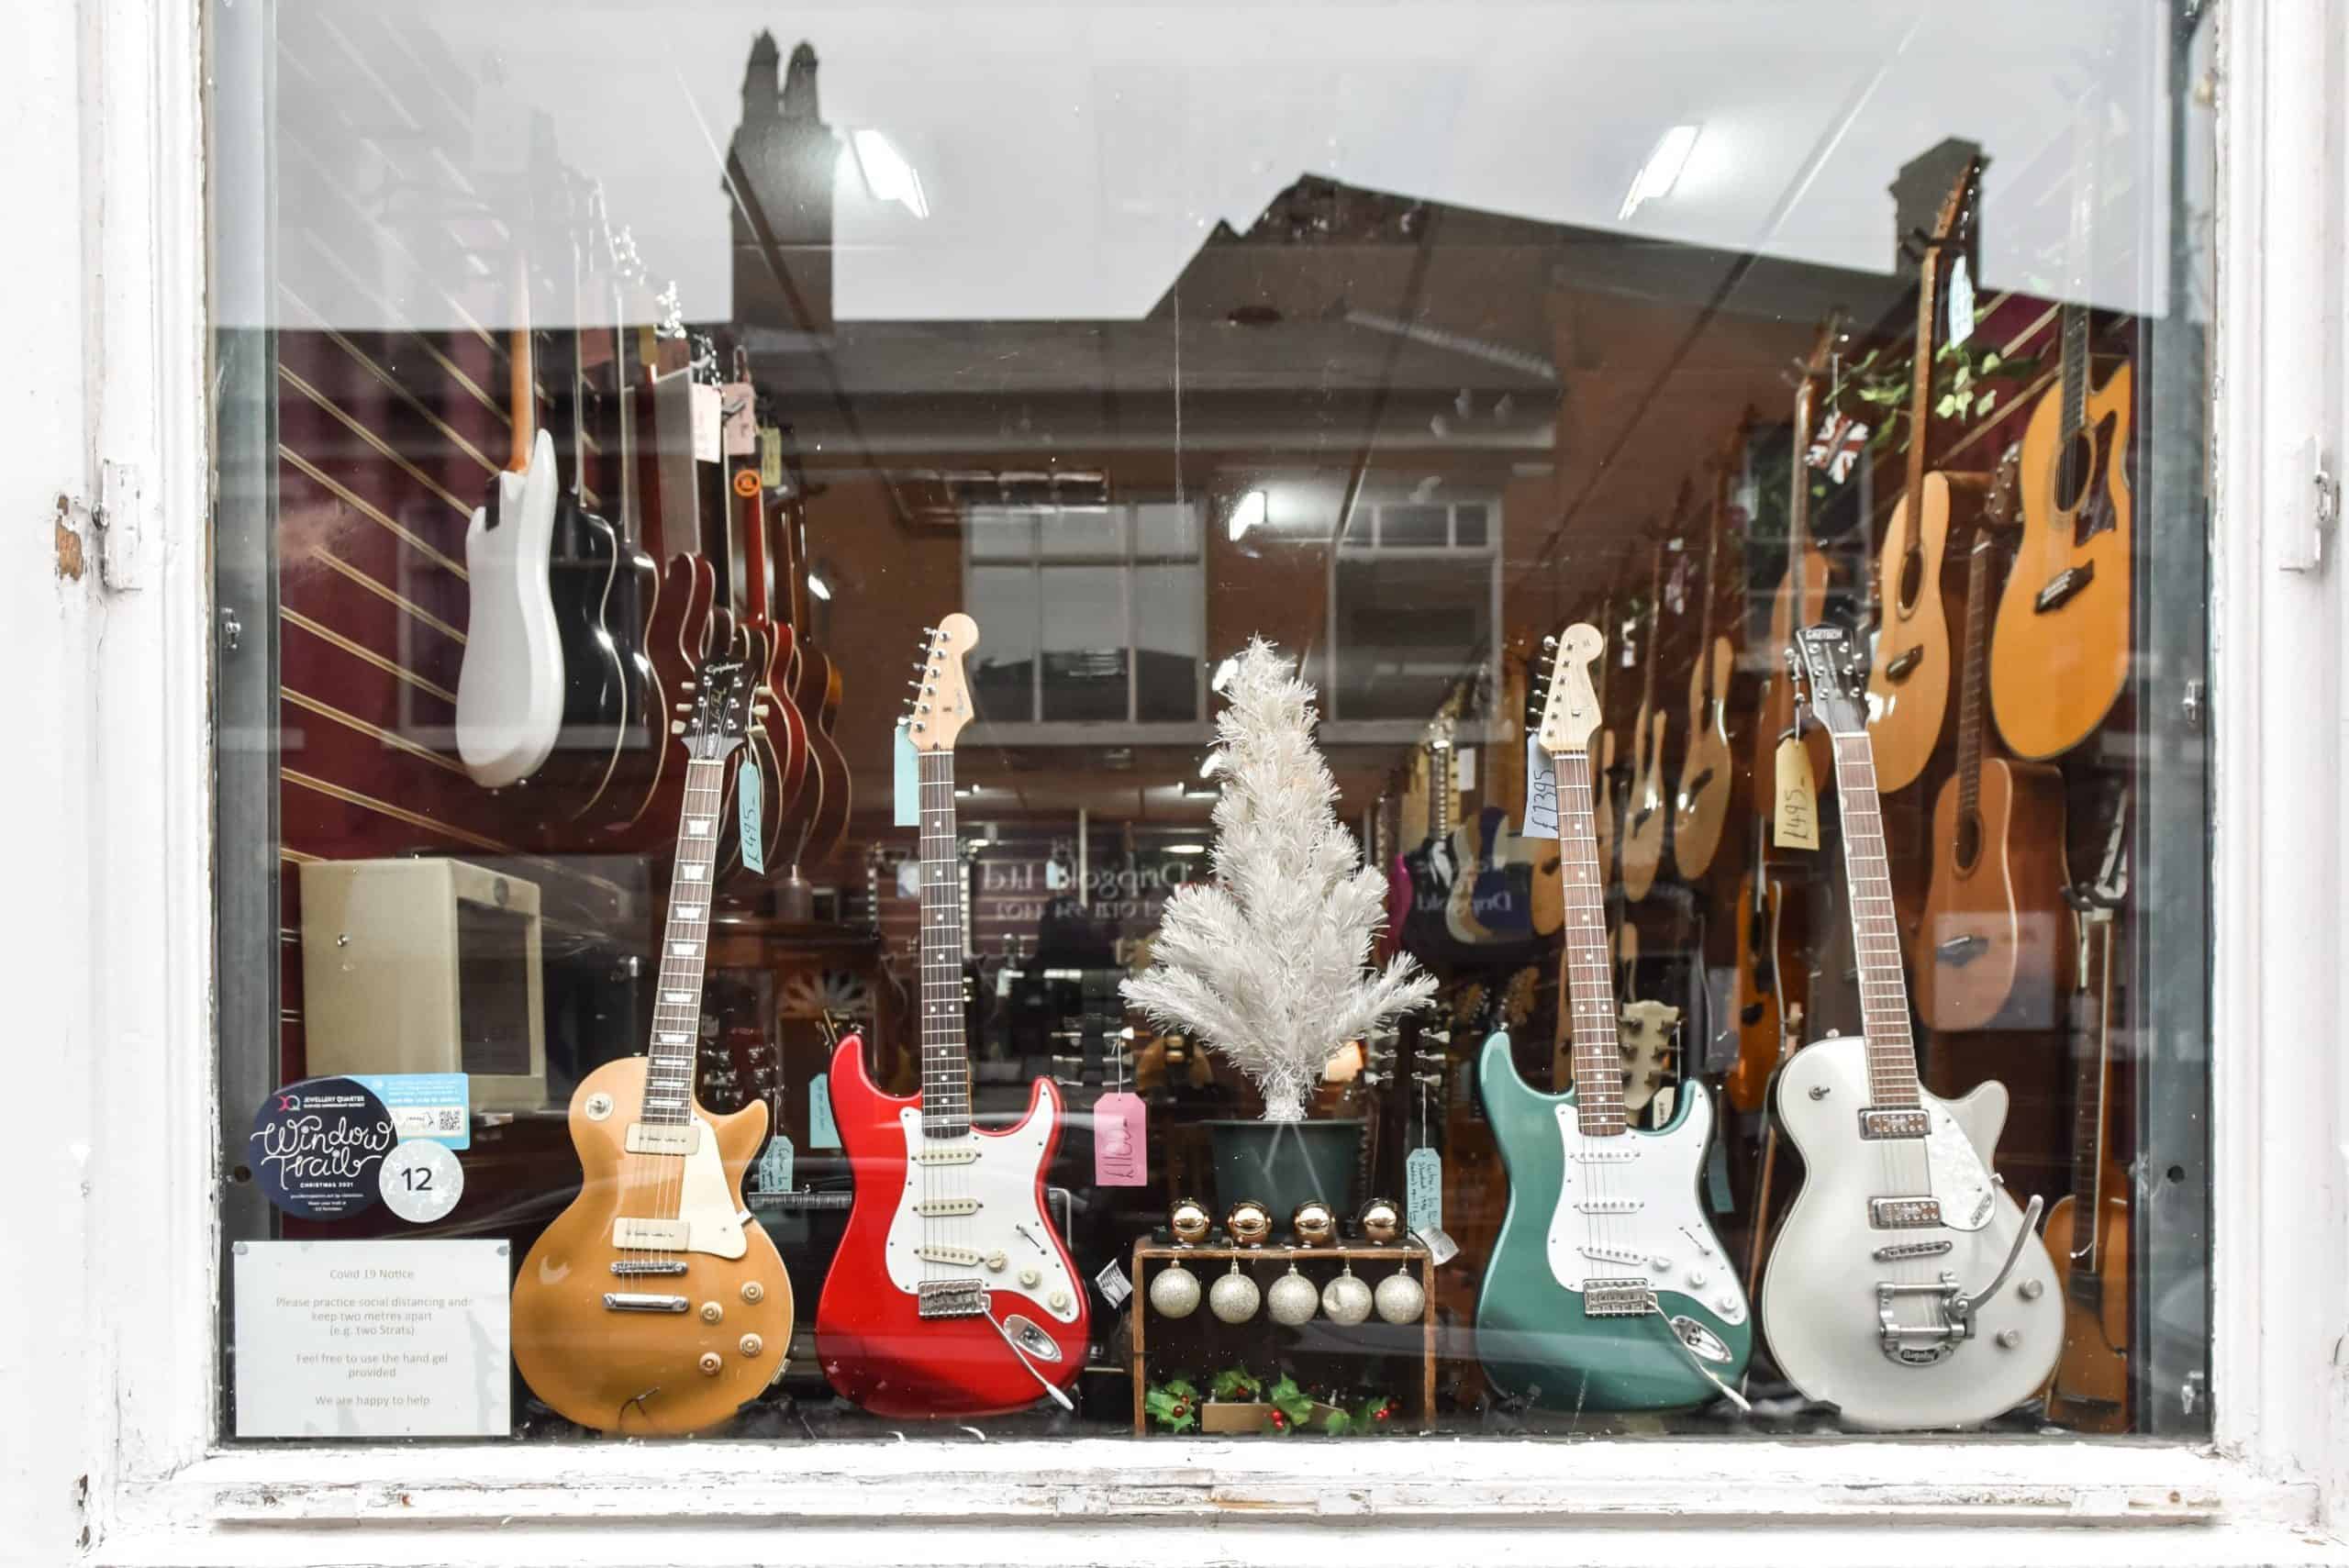 12. The Little Guitar Shop